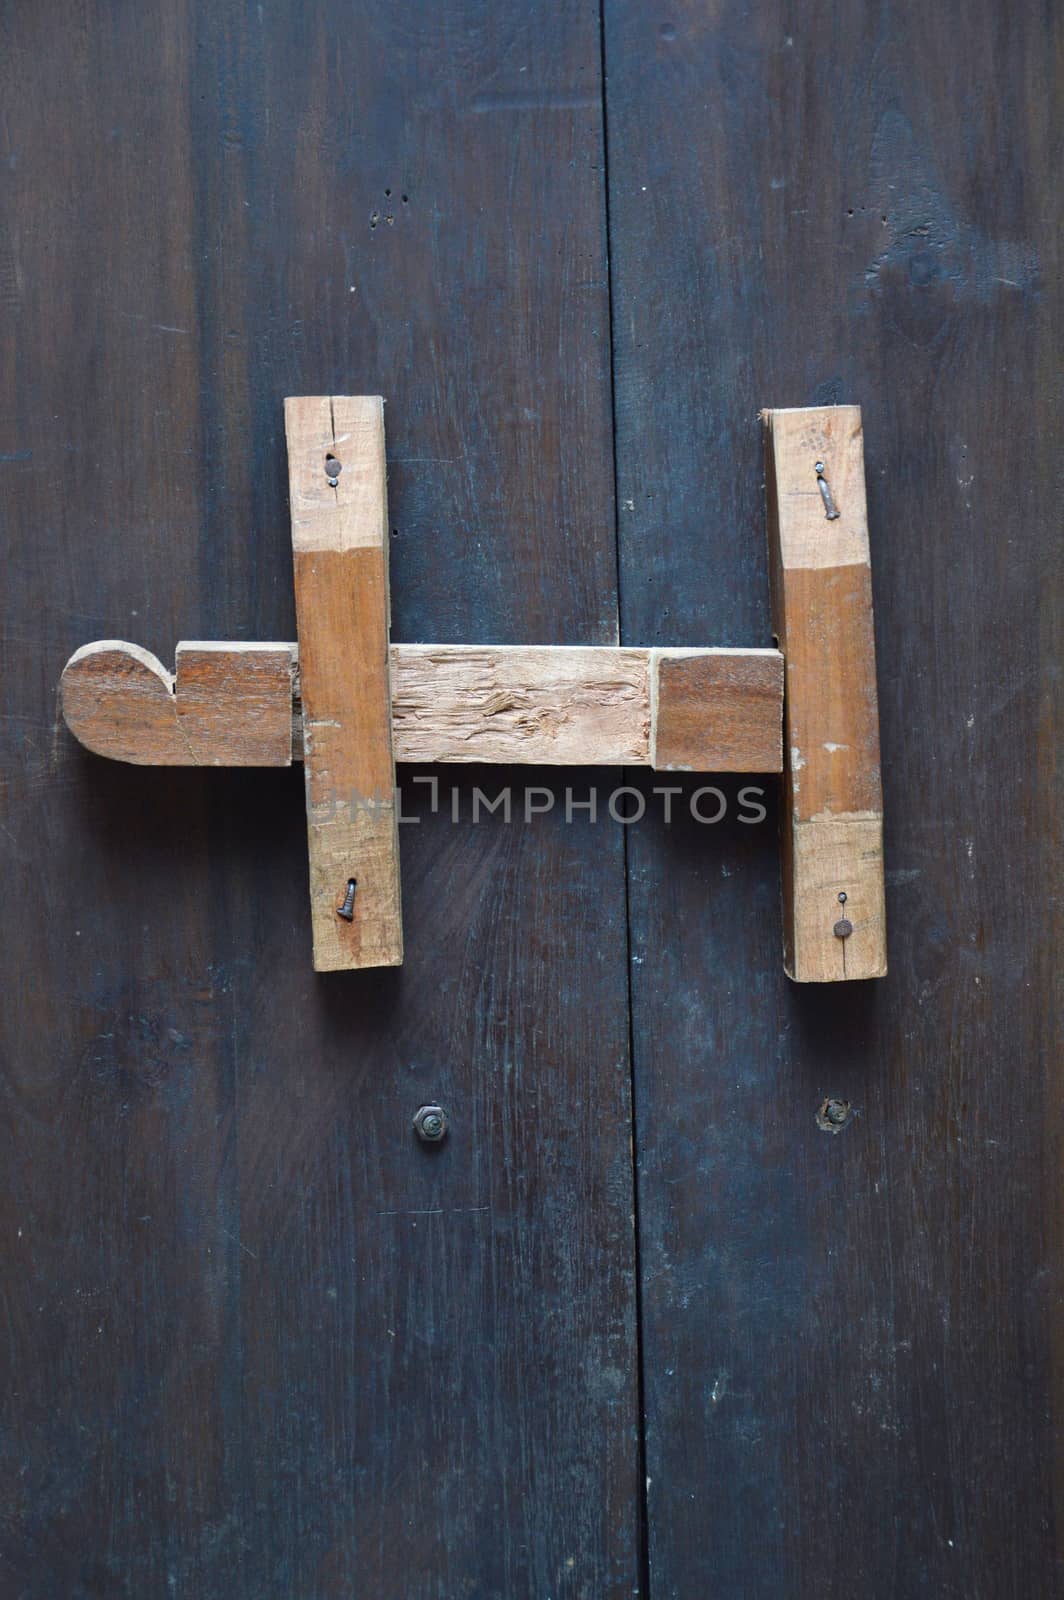 wooden lock bar on the wooden door